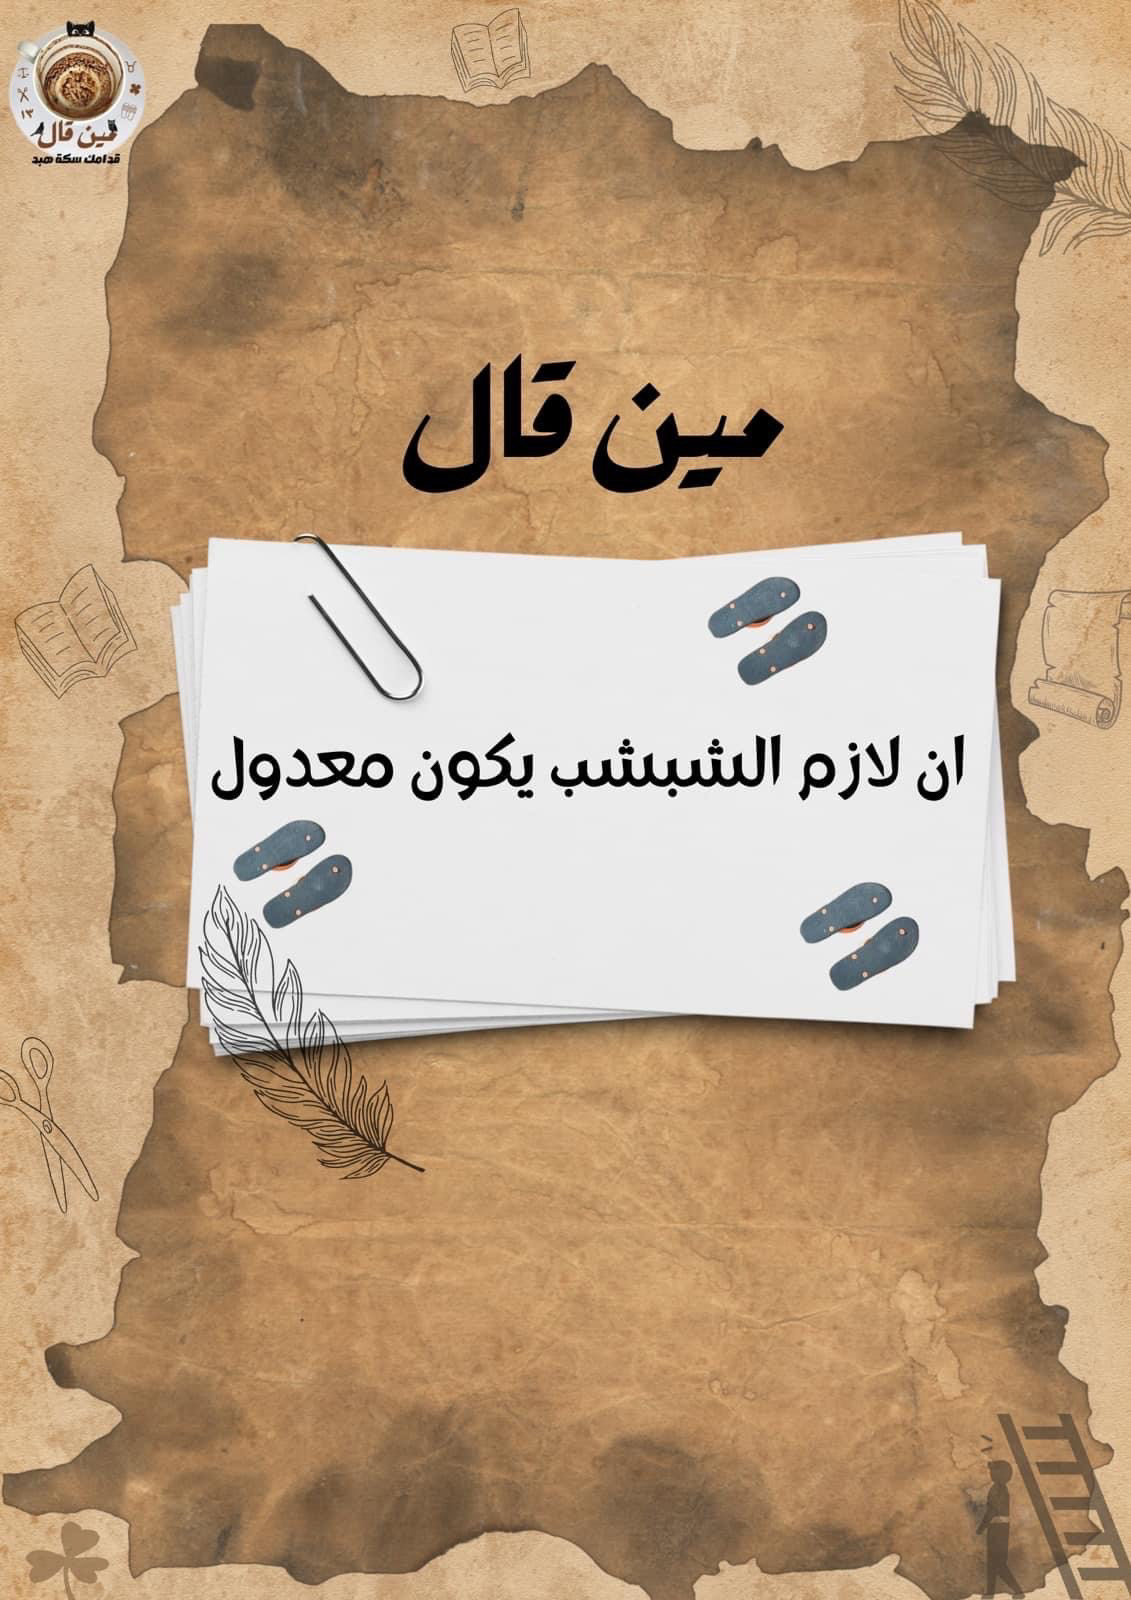 superstition tradition egypt arabic ramadan Advertising  Graphic Designer Social media post Socialmedia proverbs